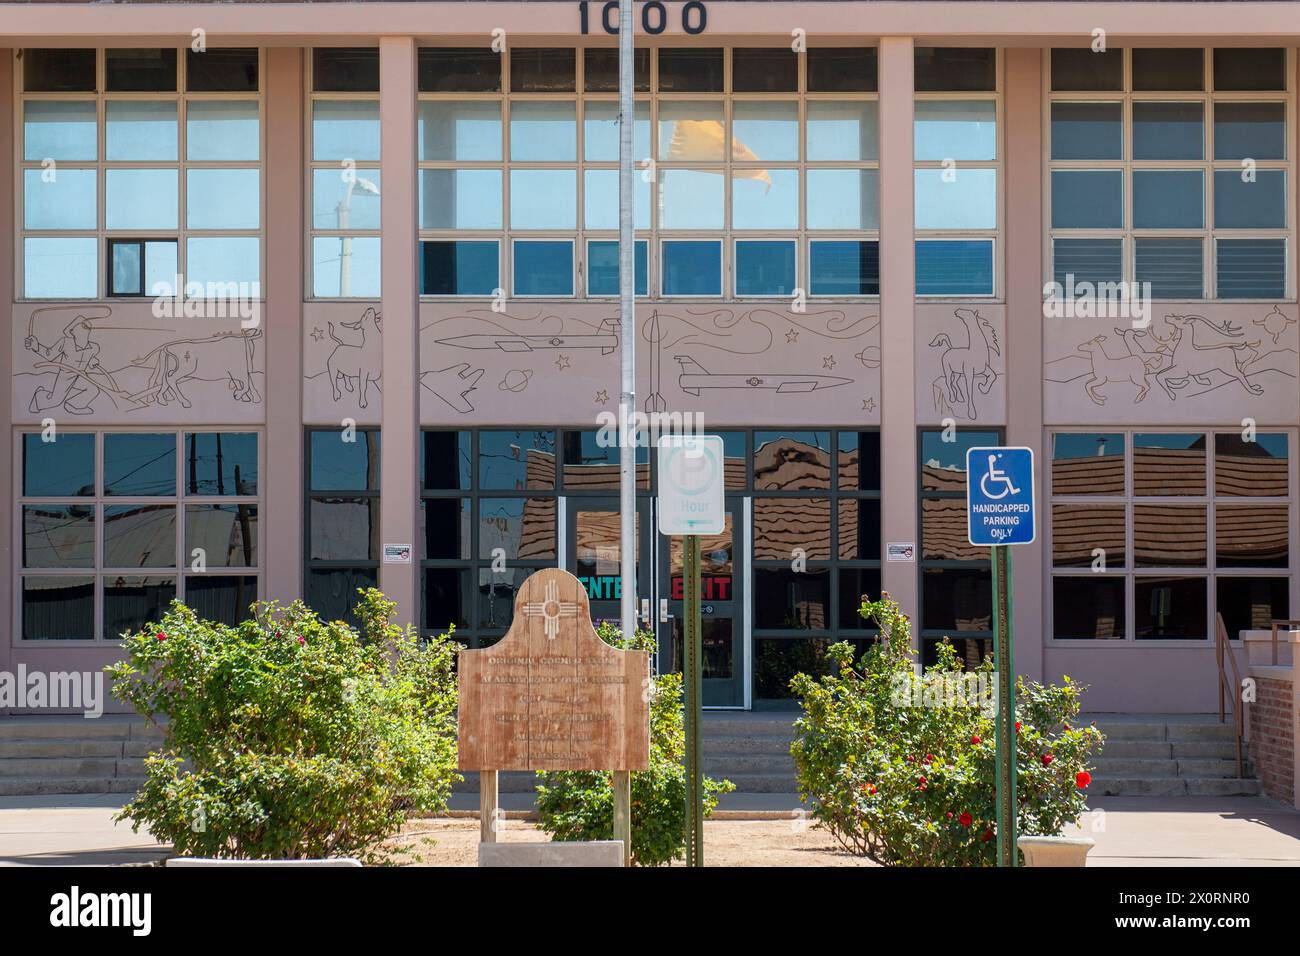 Otero County Court House in downtown Alamogordo, NM Stock Photo